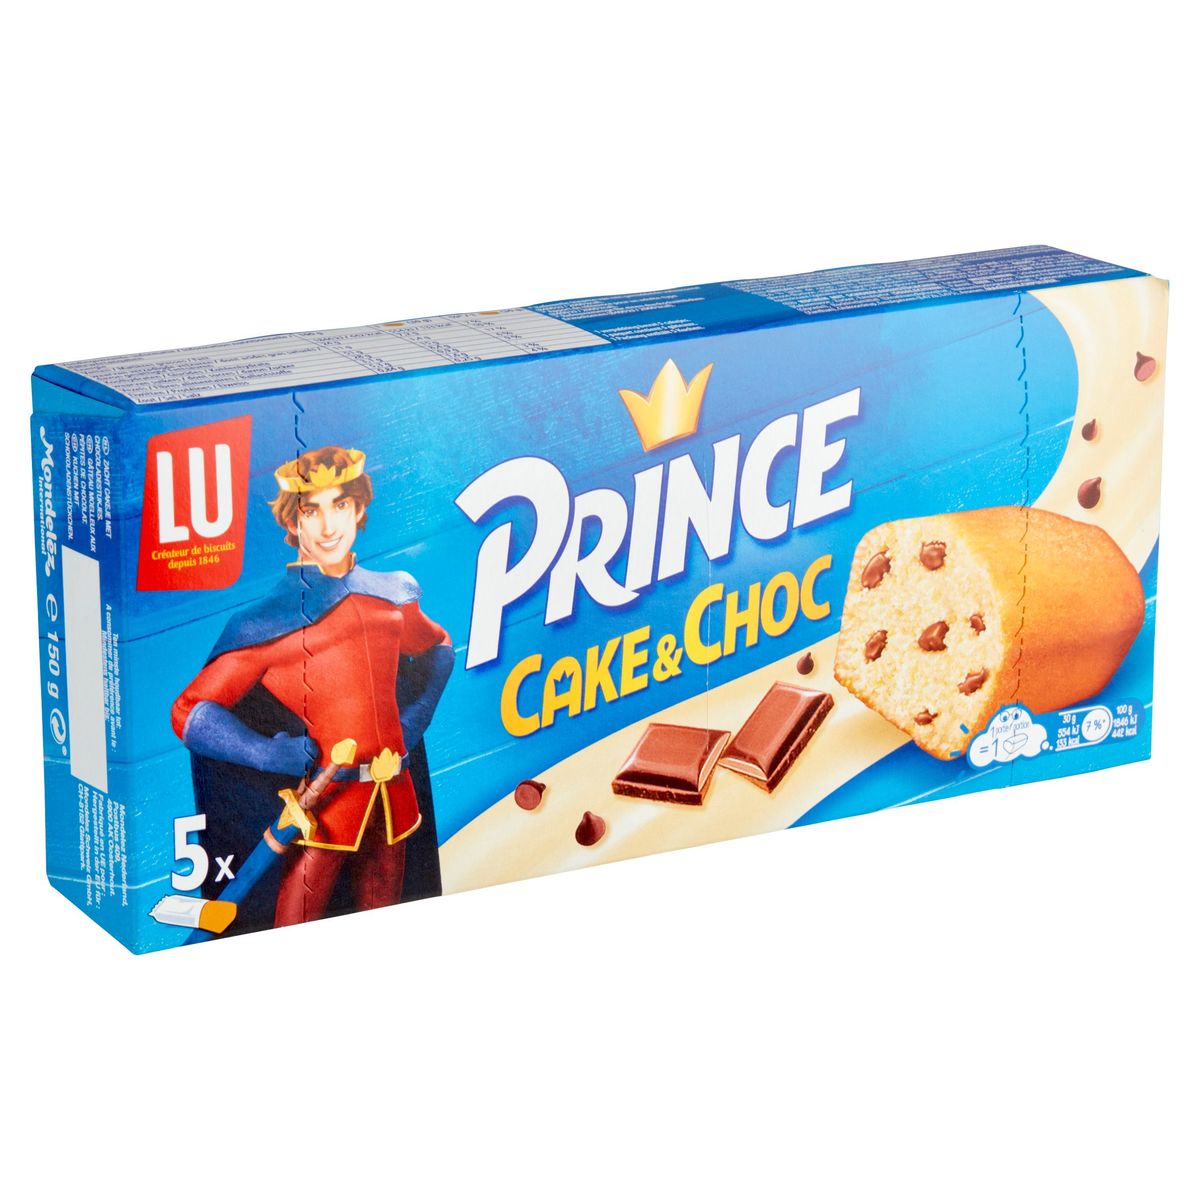 LU Prince Cake & Choc Chocolade Cakes 150 g